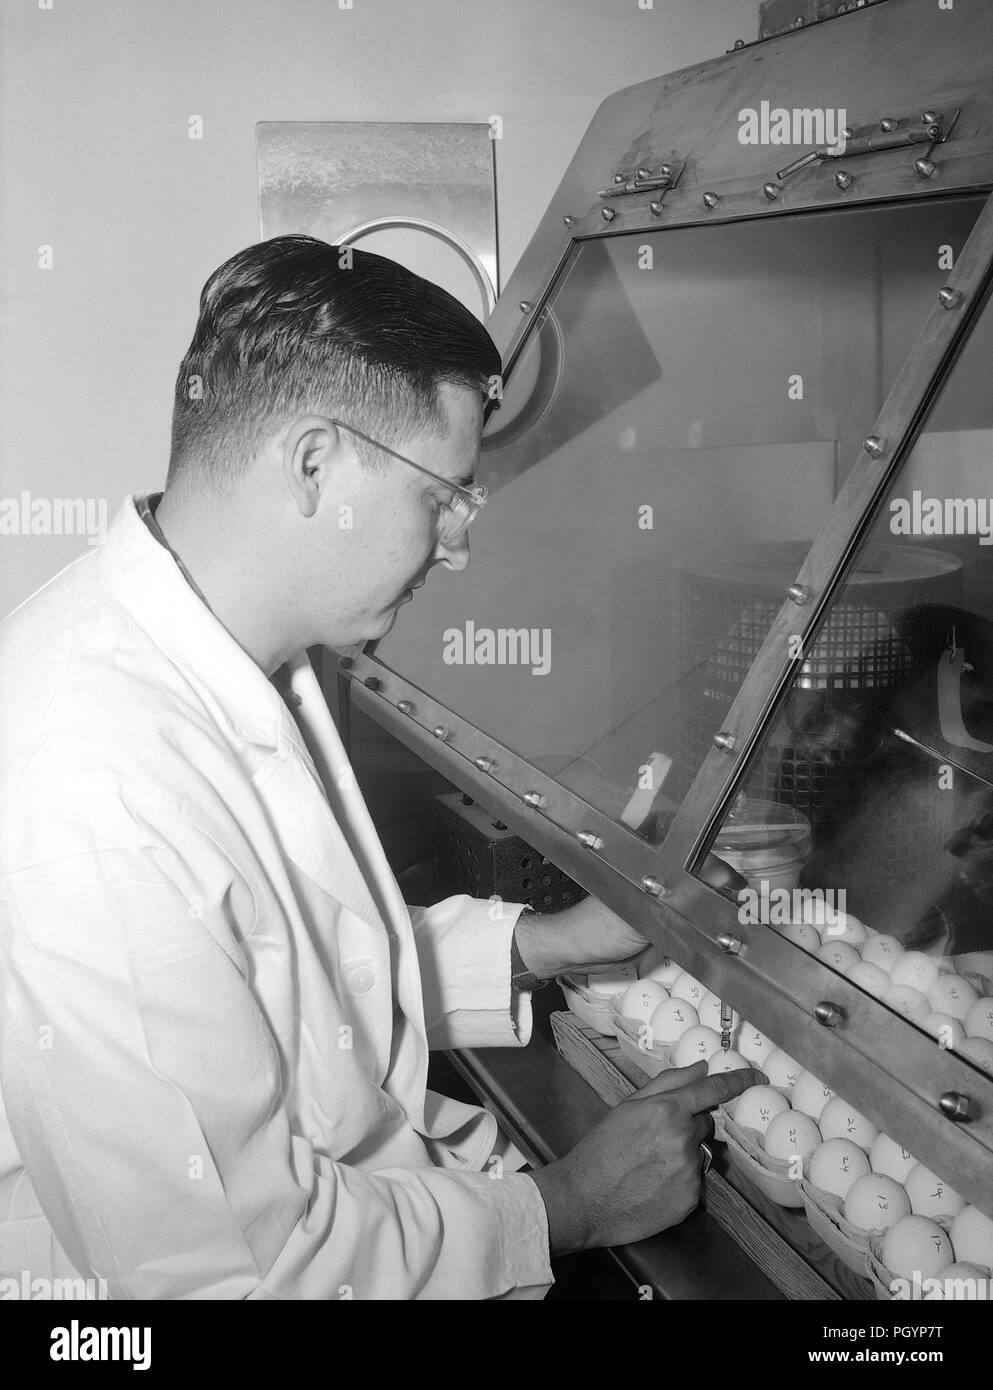 Fotografia in bianco e nero di Dr Hersey, Capt, USAF, che indossa un mantello bianco mentre inoculare il tuorlo sacche di uova embrionate di pollo durante un Ricketts infettività studio, Immagine cortesia CDC, 1980. () Foto Stock